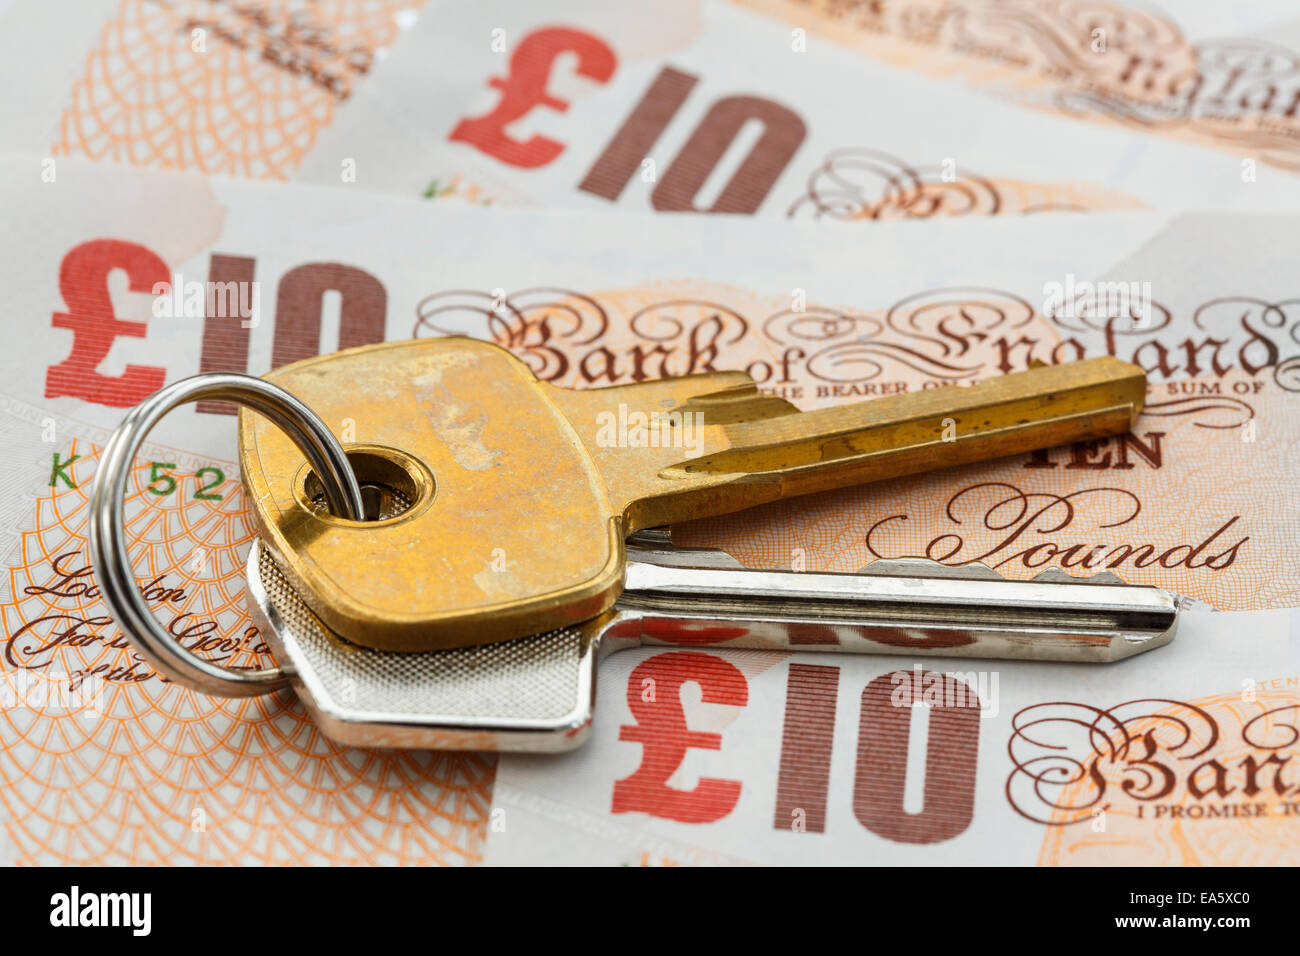 House keys sur l'argent livre sterling dix livres sterling billets GBP pour illustrer le concept d'épargne et d'investissement des prix immobiliers au Royaume-Uni. Angleterre, Royaume-Uni, Grande-Bretagne Banque D'Images